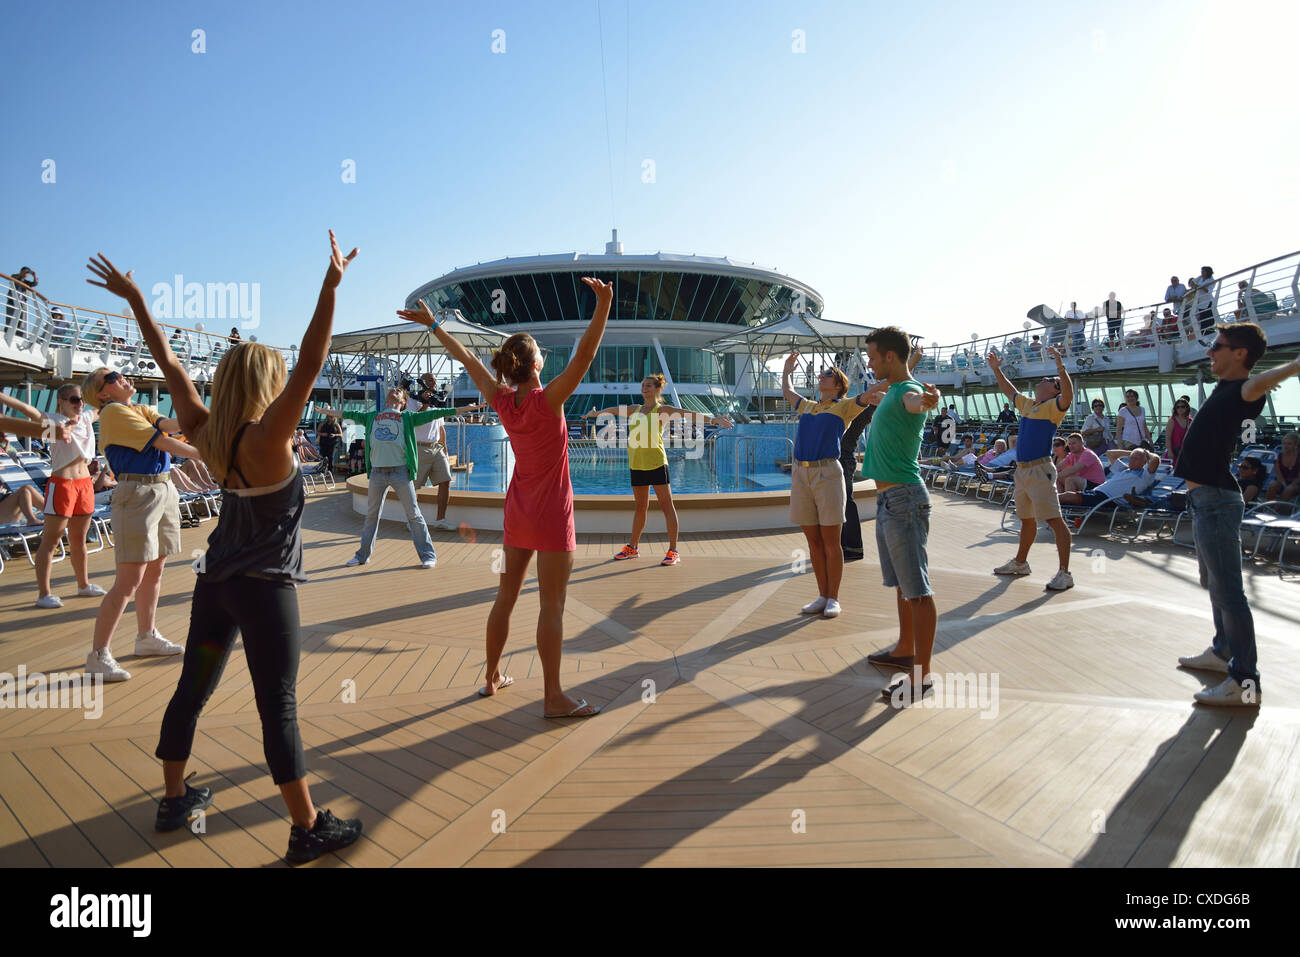 Tanzgruppe auf Sonnendeck der Royal Caribbean "Grandeur of the Seas" Kreuzfahrtschiff, Adria, Mittelmeer, Europa Stockfoto